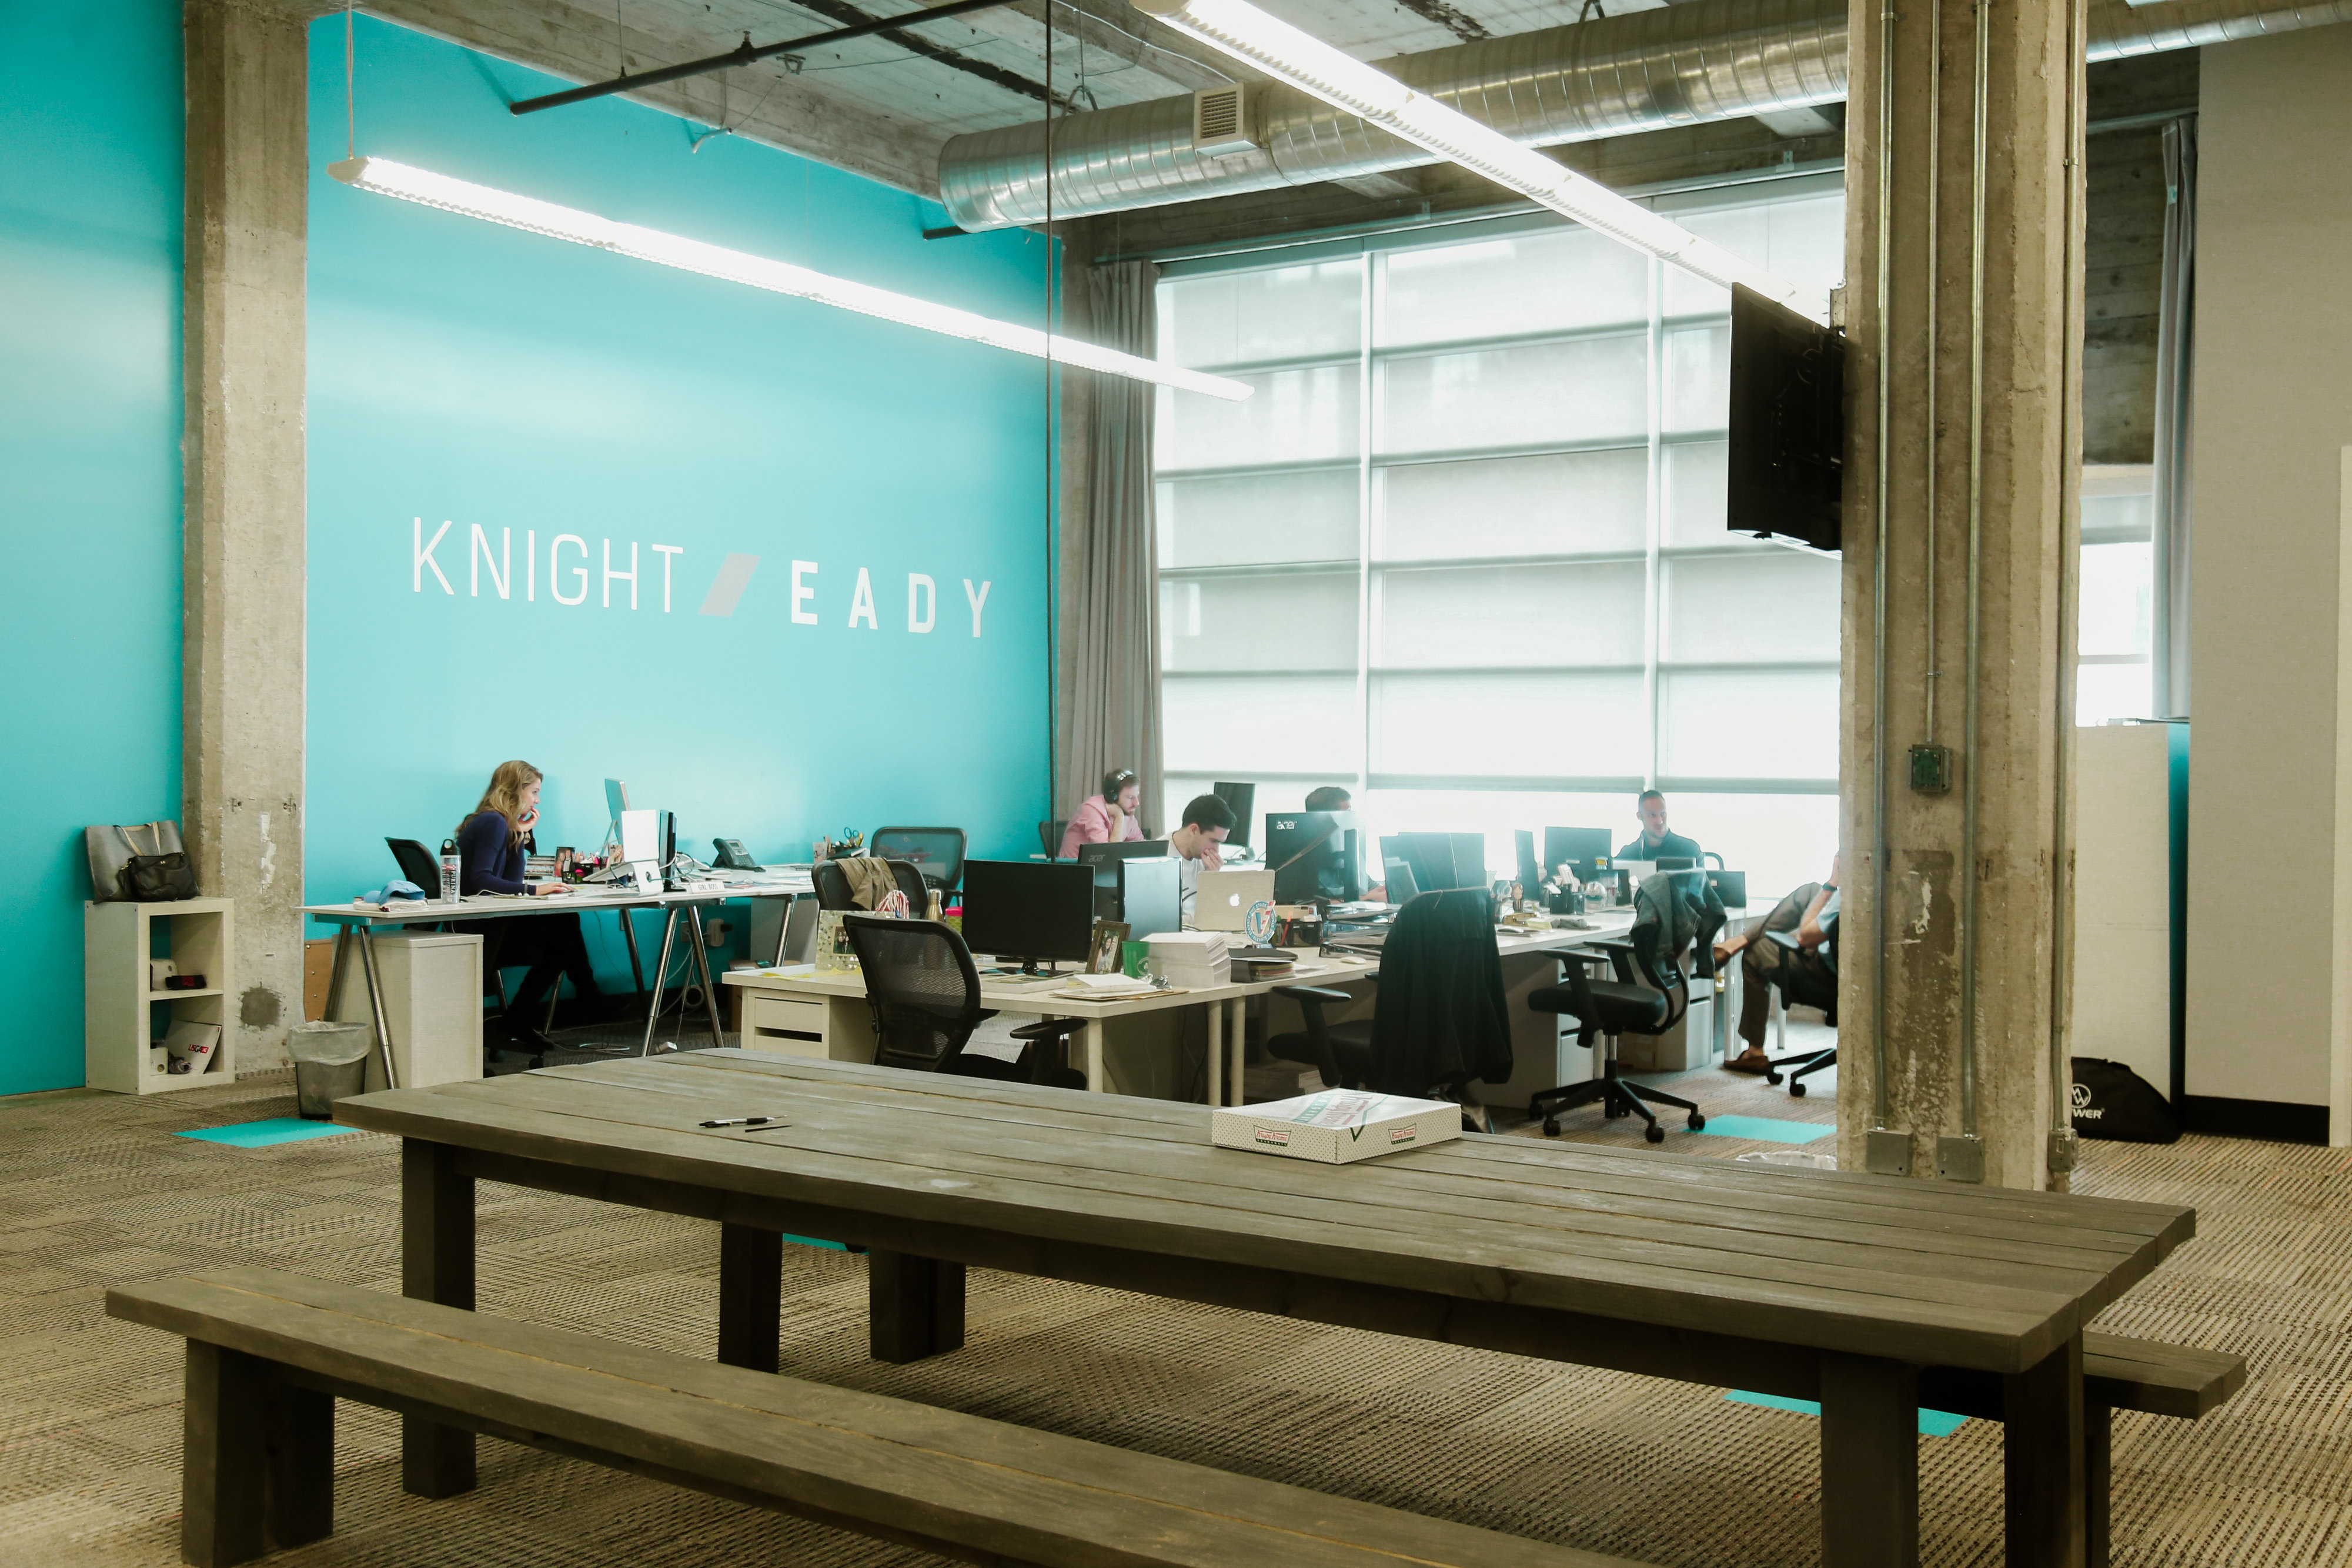 Knight Eady Innovation Depot